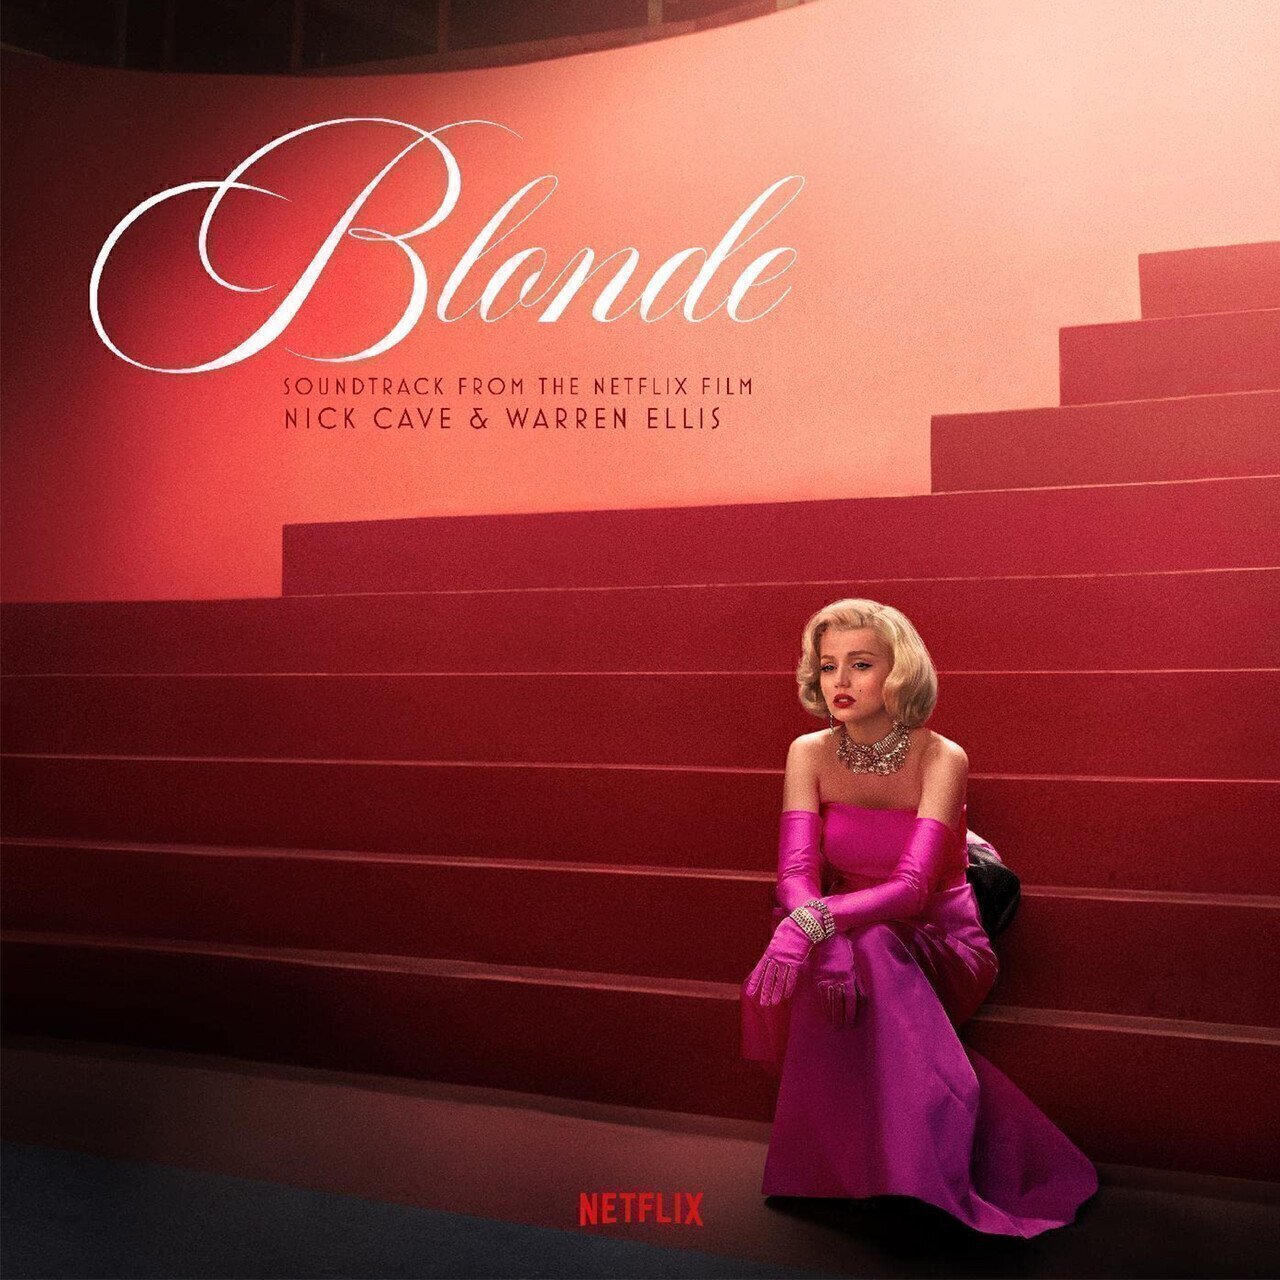 Blonde (Soundtrack From The Netflix Film) - Vinyl | Nick Cave & Warren Ellis